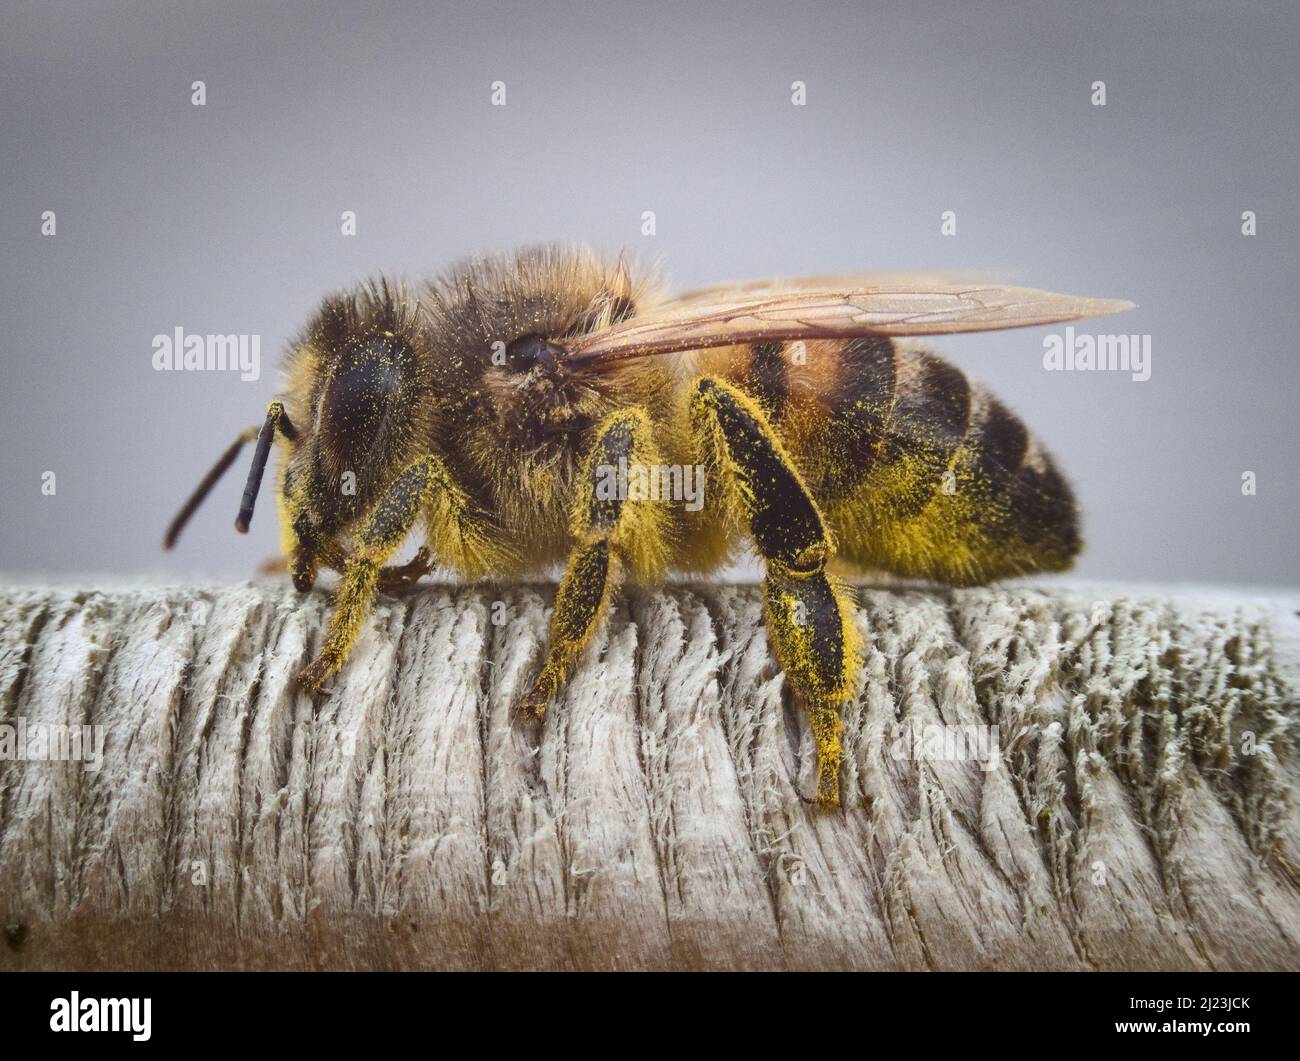 Macro fotografia dell'ape del miele occidentale primaverile (Apis mellifera) che riposa su un cancello di legno, coperto di polline, possibilmente da un dente di leone. REGNO UNITO. Foto Stock